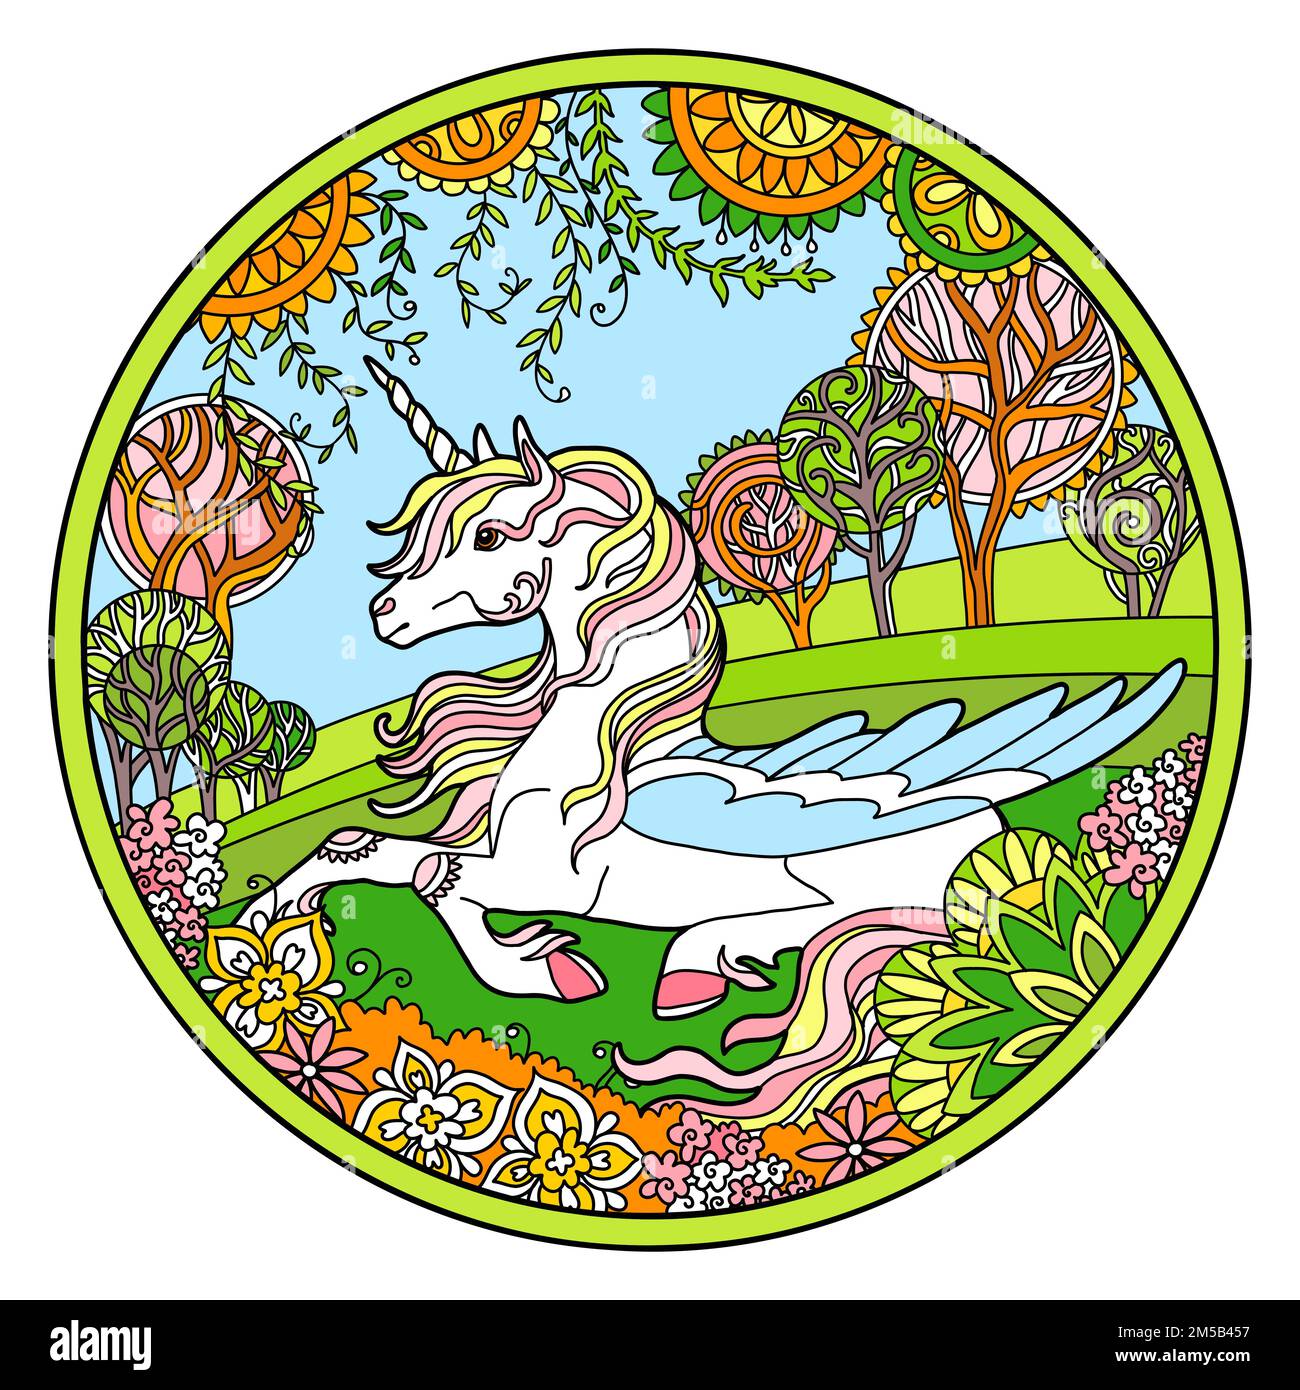 Pegasus in forma rotonda con cornice floreale. Immagine a colori con cavallo fantasy disegnato in stile groviglio. Disegno di schizzo a mano libera antistress. Illustrazione vettoriale. Illustrazione Vettoriale